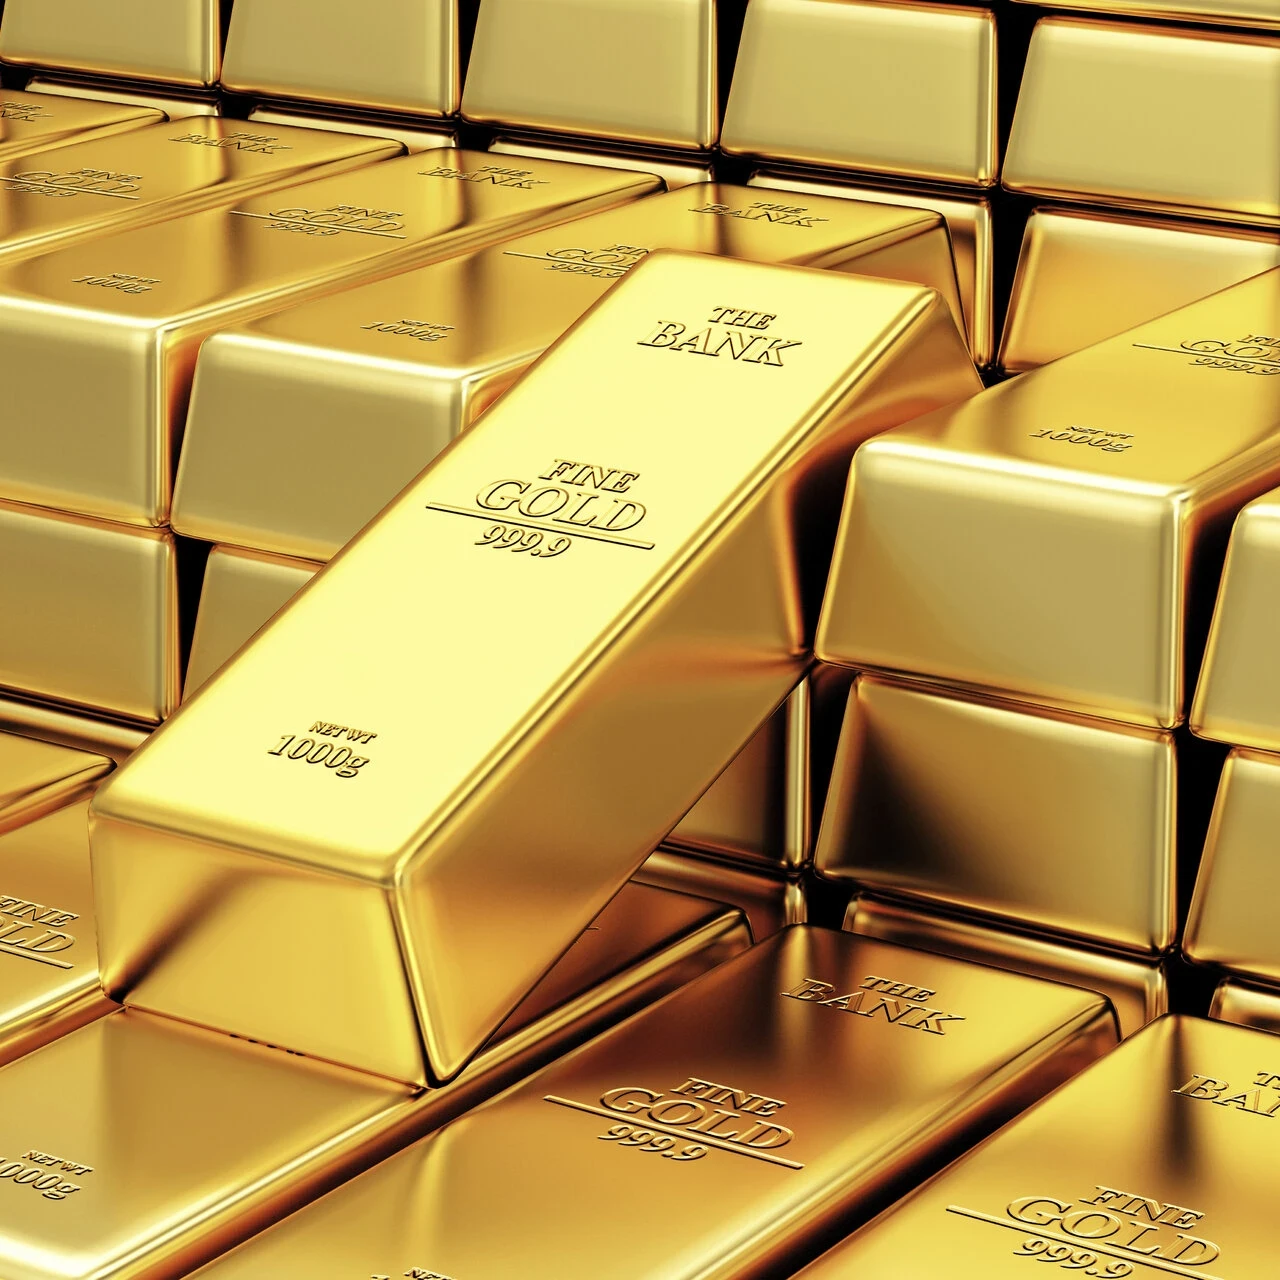 توقعات خبير مالي: ارتفاع أسعار الذهب في الأشهر المقبلة بسبب الظروف الدولية غير المستقرة